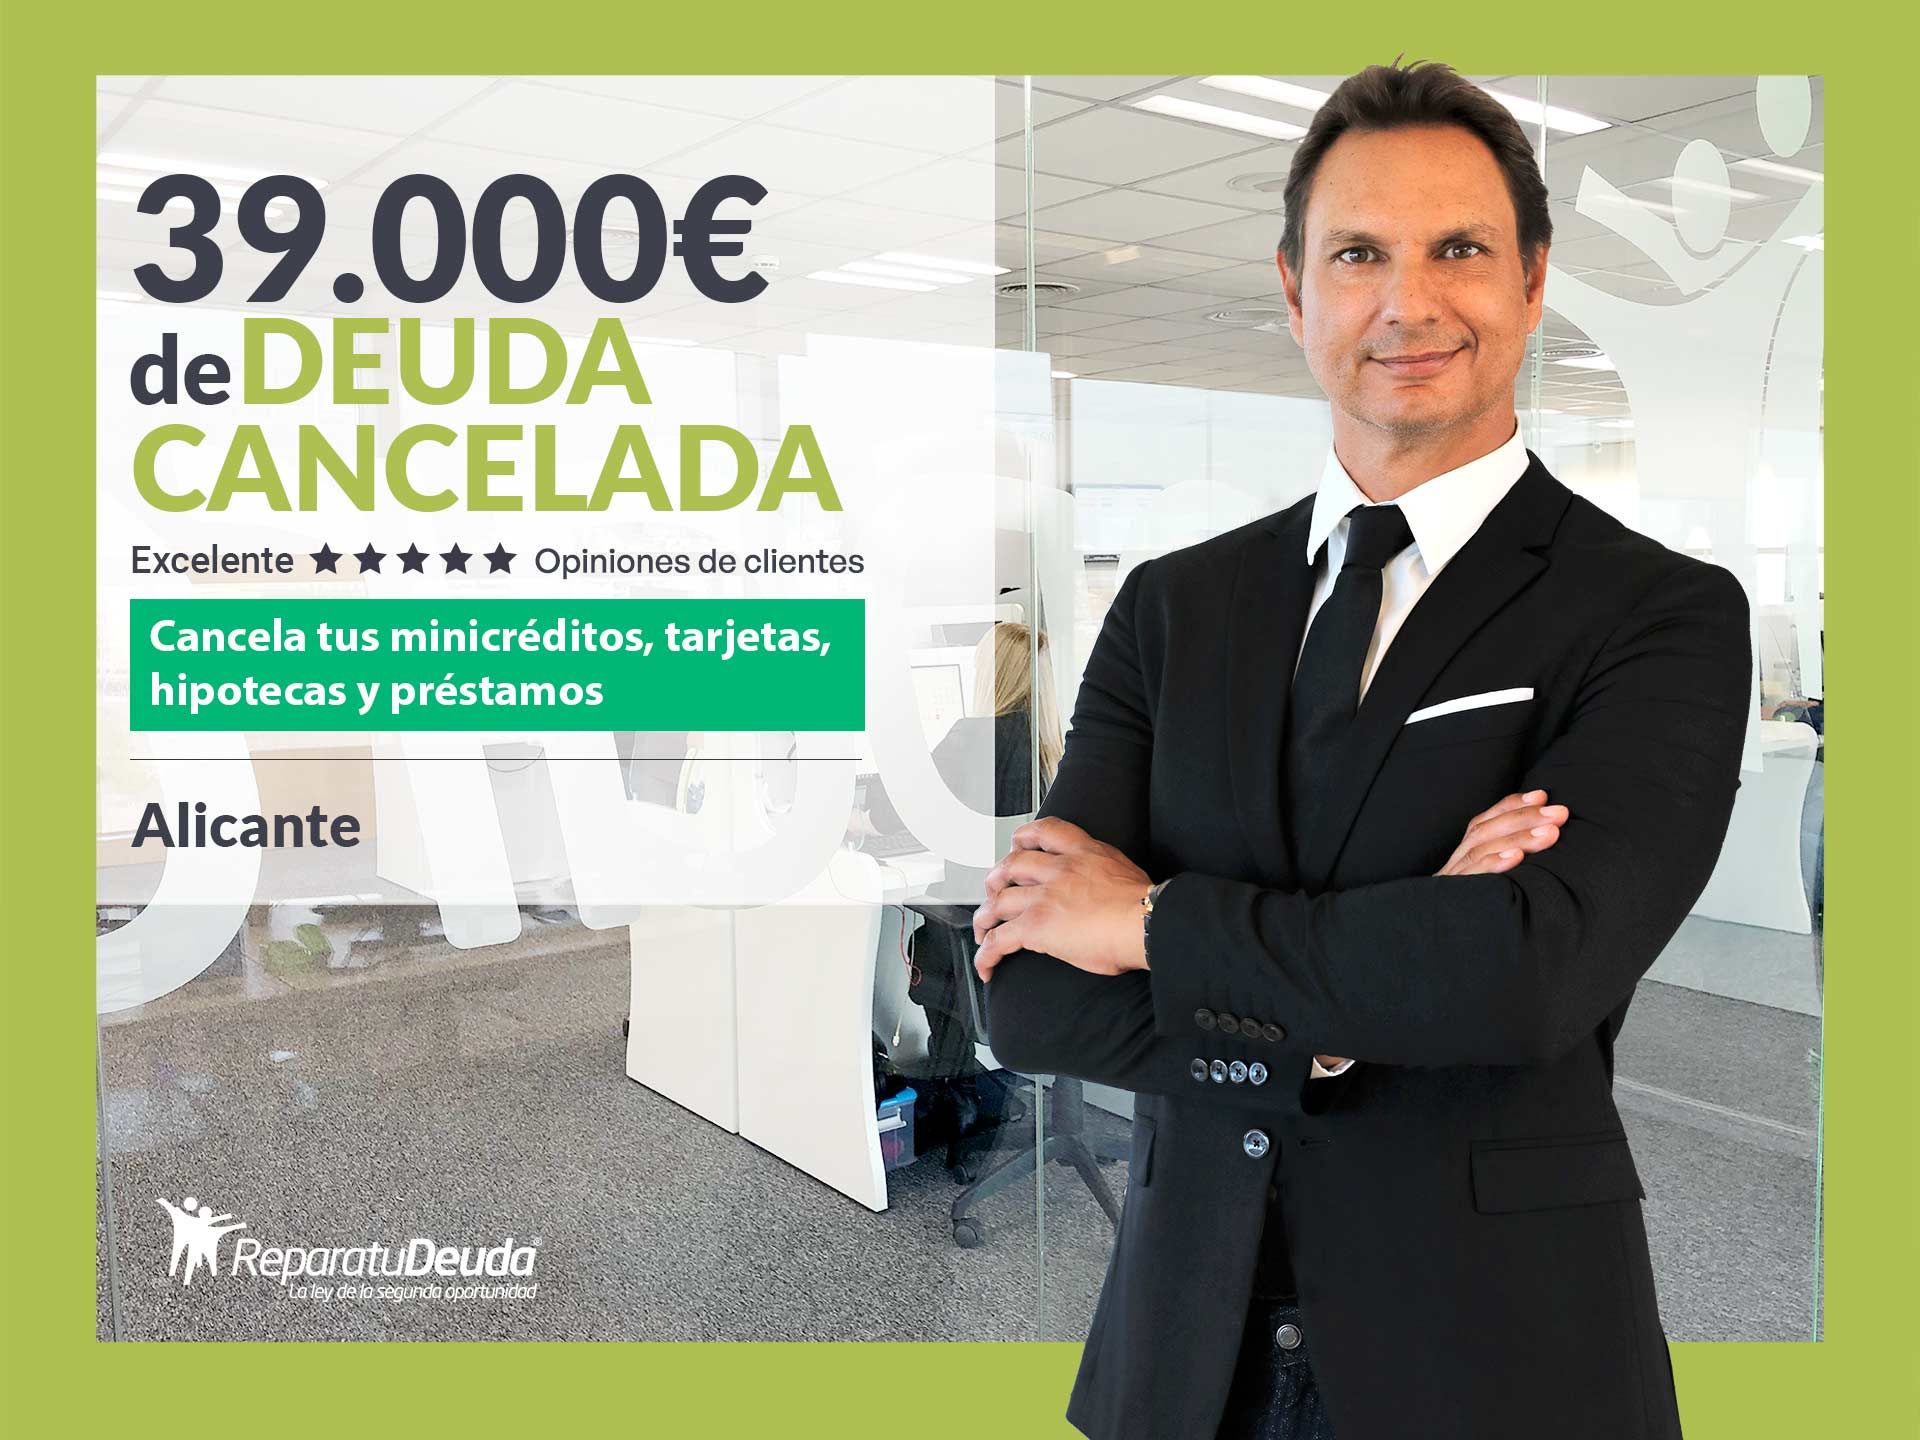 Repara tu Deuda cancela 39.000? en Alicante (Comunidad Valenciana) con la Ley de Segunda Oportunidad